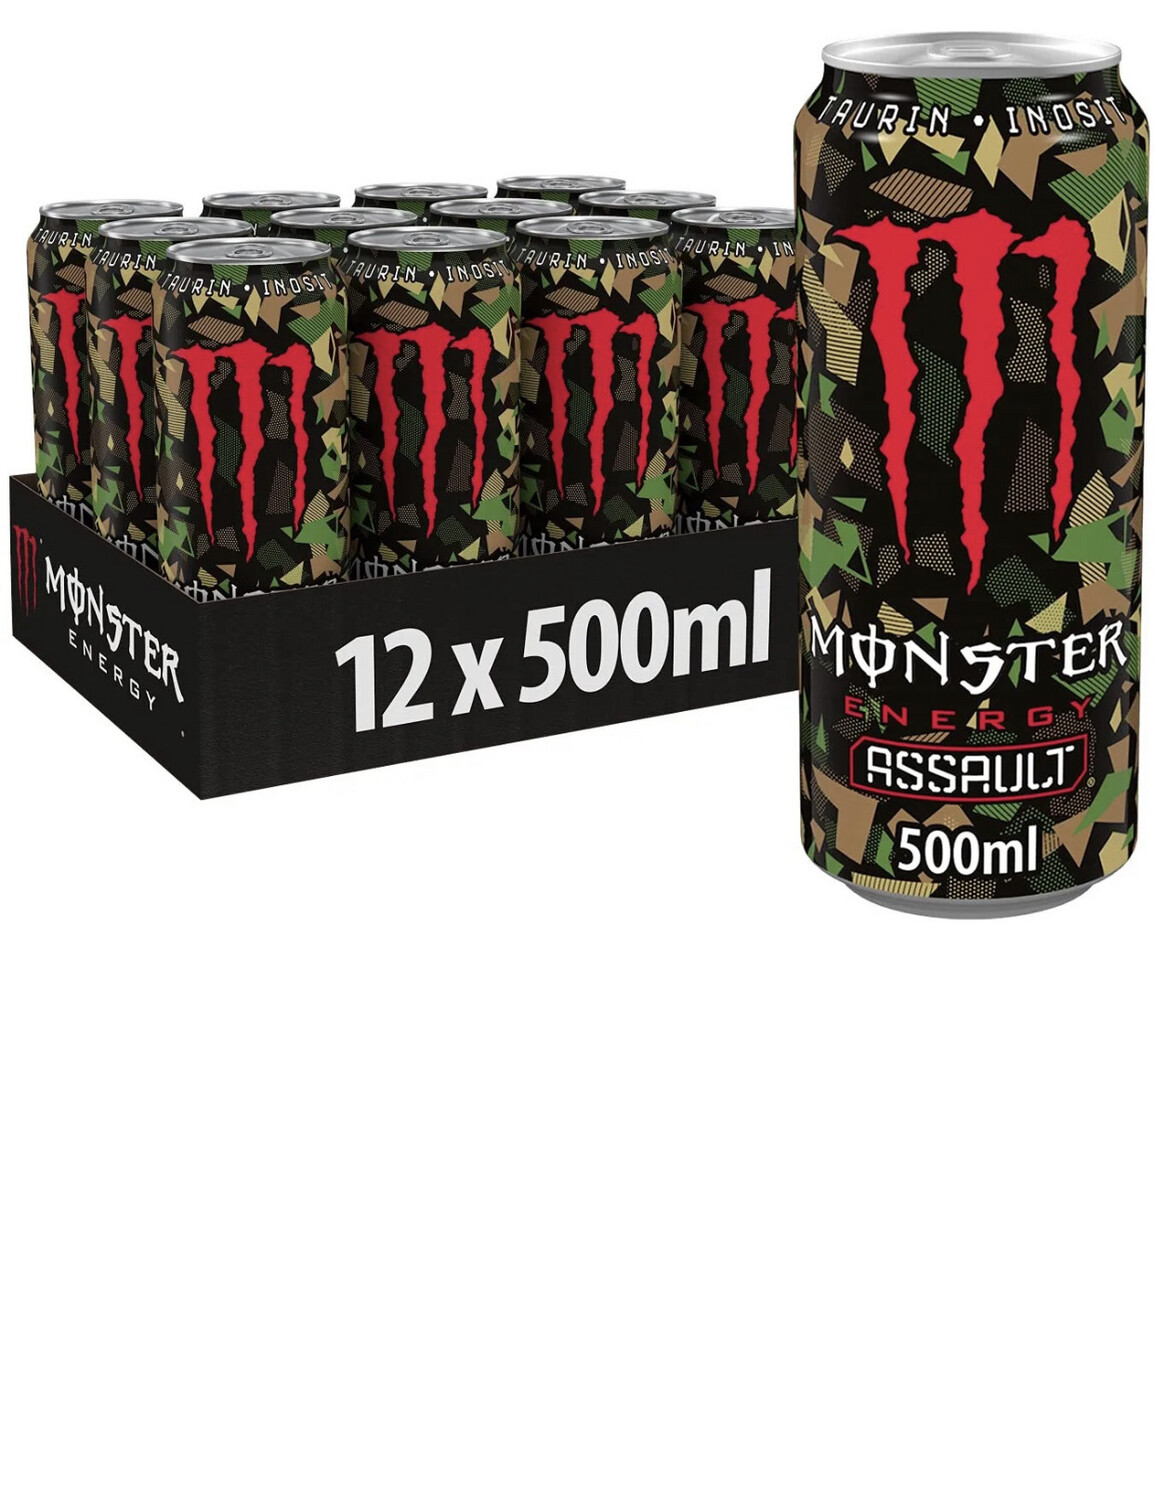 Monster Assault 12x500ml PM£1.49 BBE-25/01/24